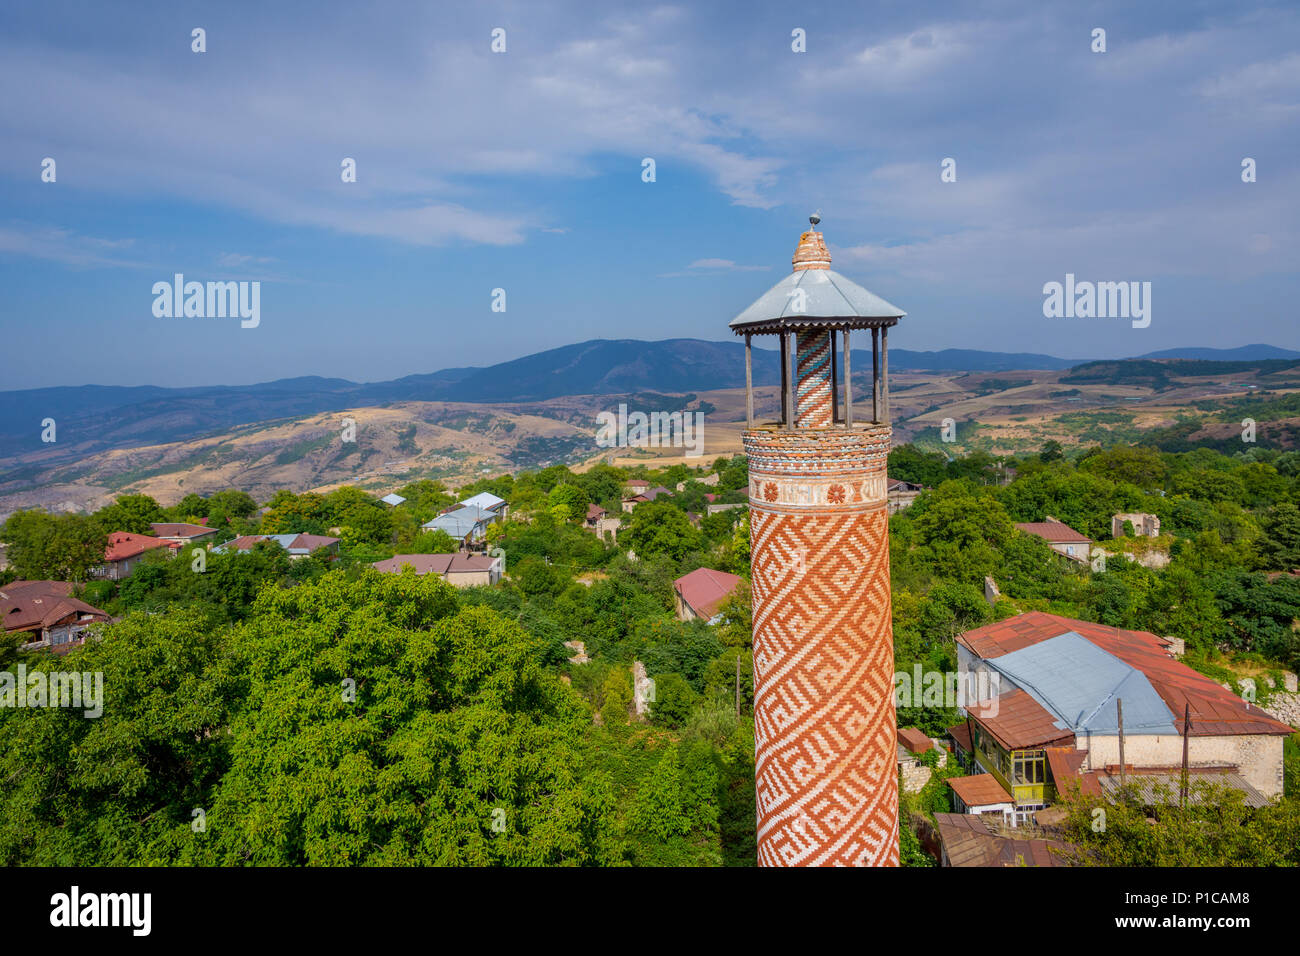 Minaret of abandoned Lower mosque, Shushi, Nagorno Karabakh, Artsakh republic Stock Photo